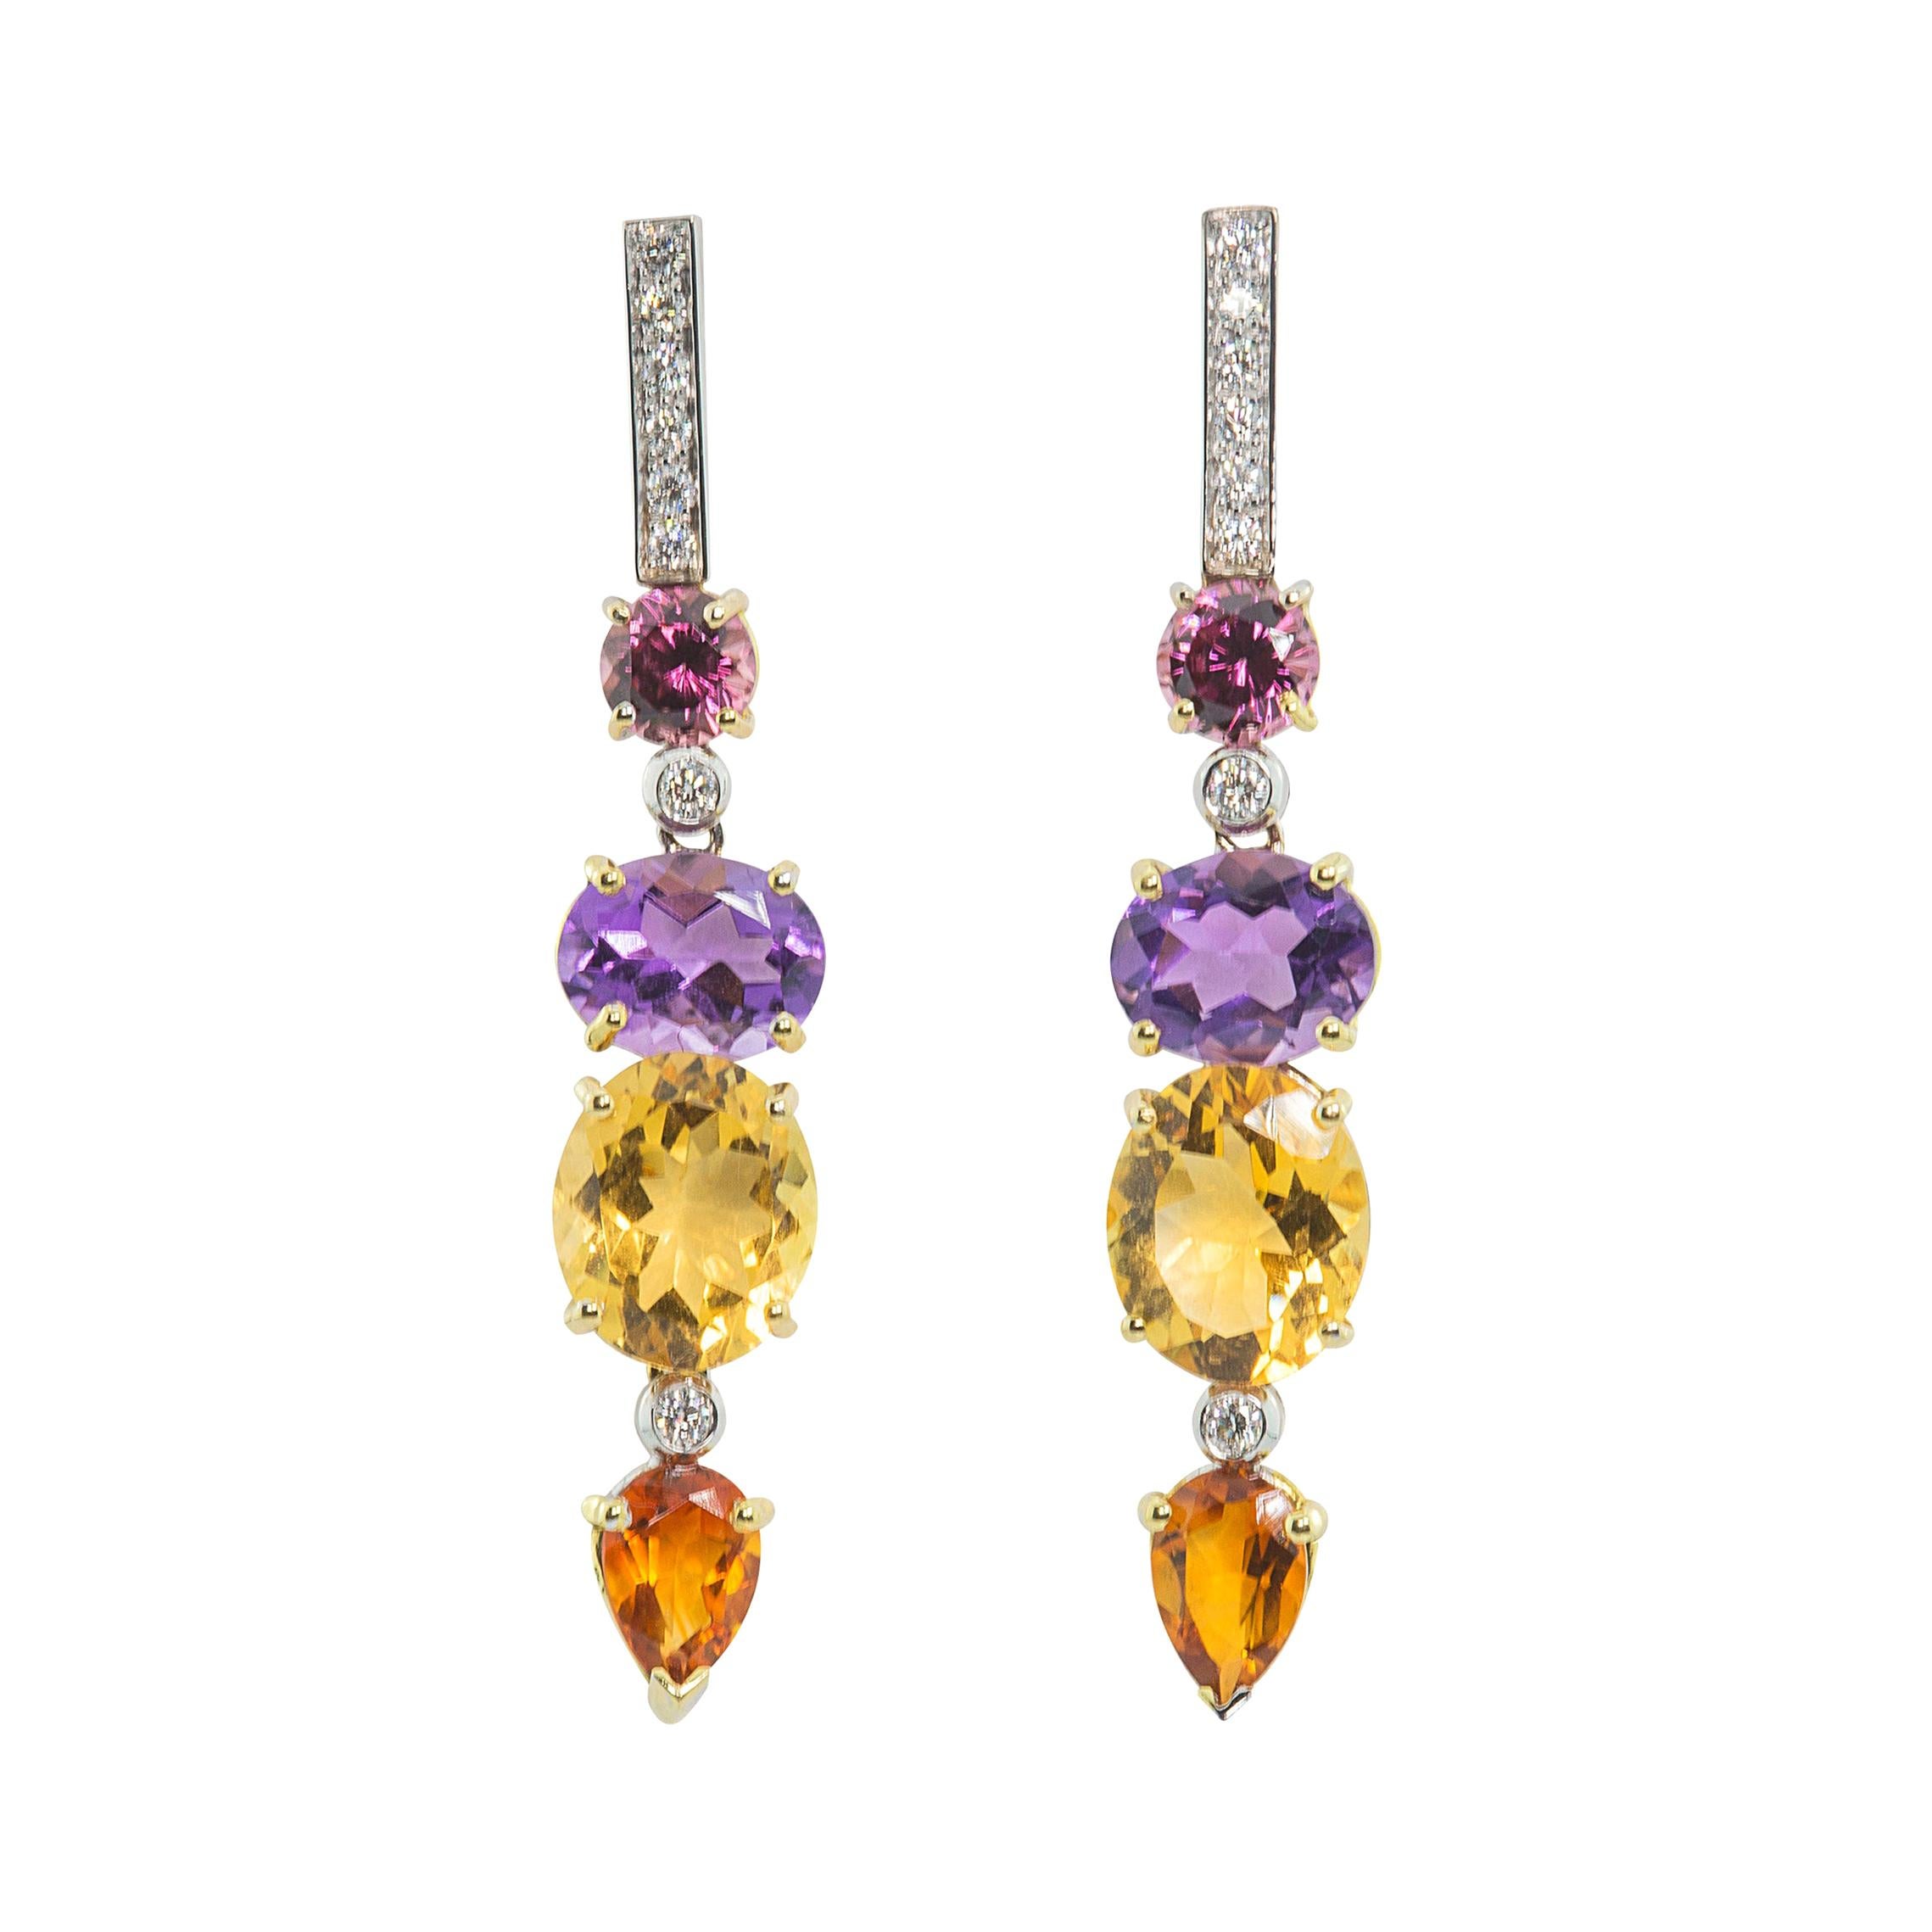 Boucles d'oreilles de style Art déco en or 18 carats avec diamants blancs 0,44 carat, améthyste et citrine